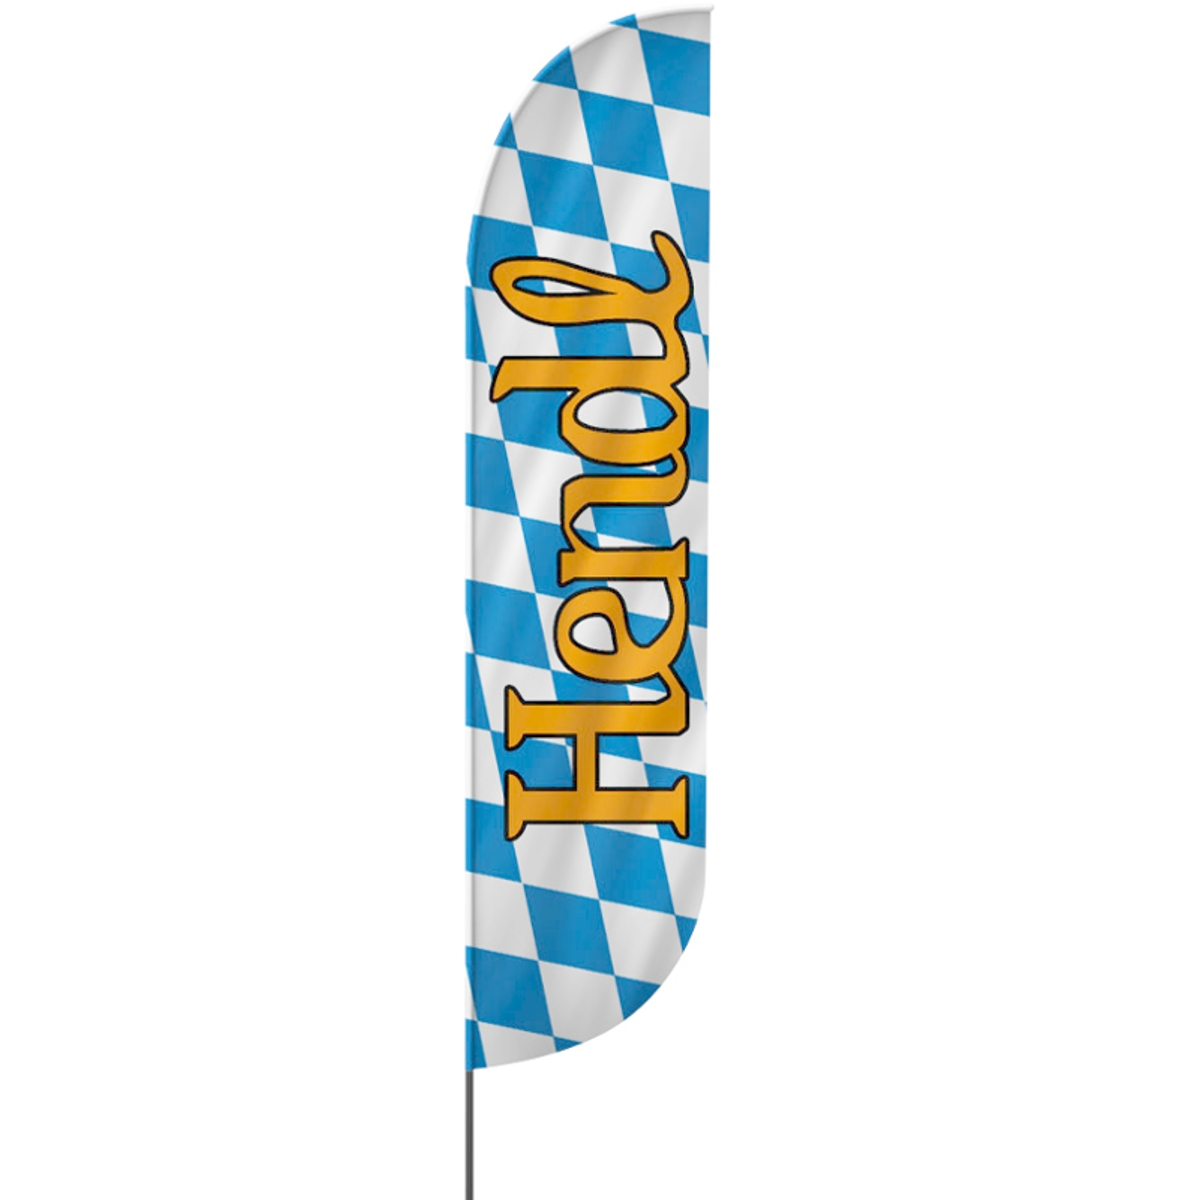 Convex | Hendl, Oktoberfest Beachflag, blau weiß, verschiedene Größen, V1